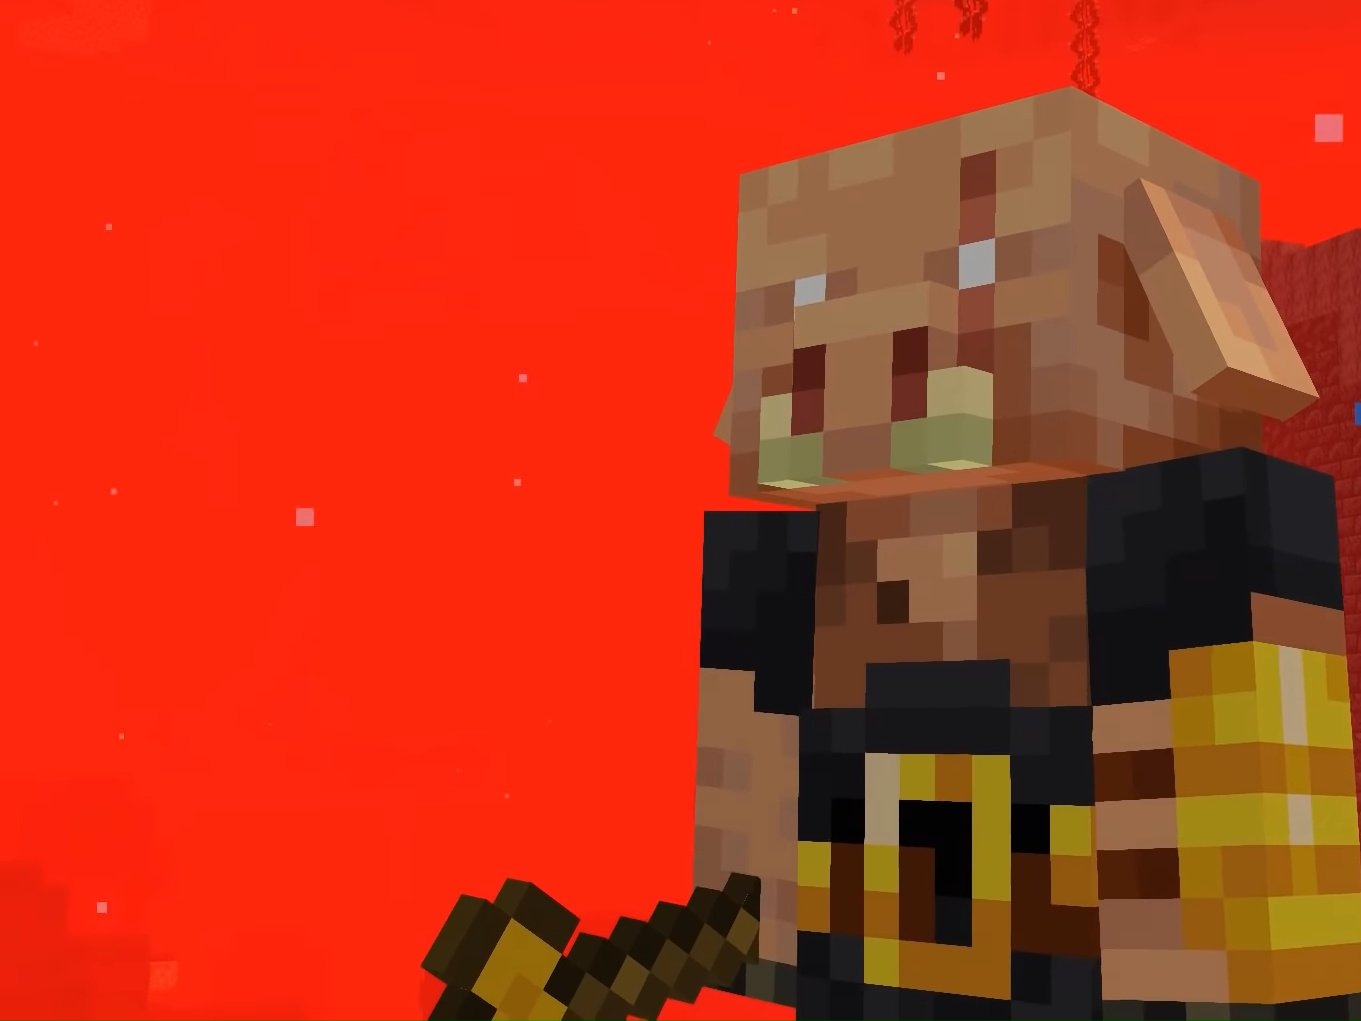 Minecraft 1.16.2 Update Adds New 'Piglin Brute' Mob